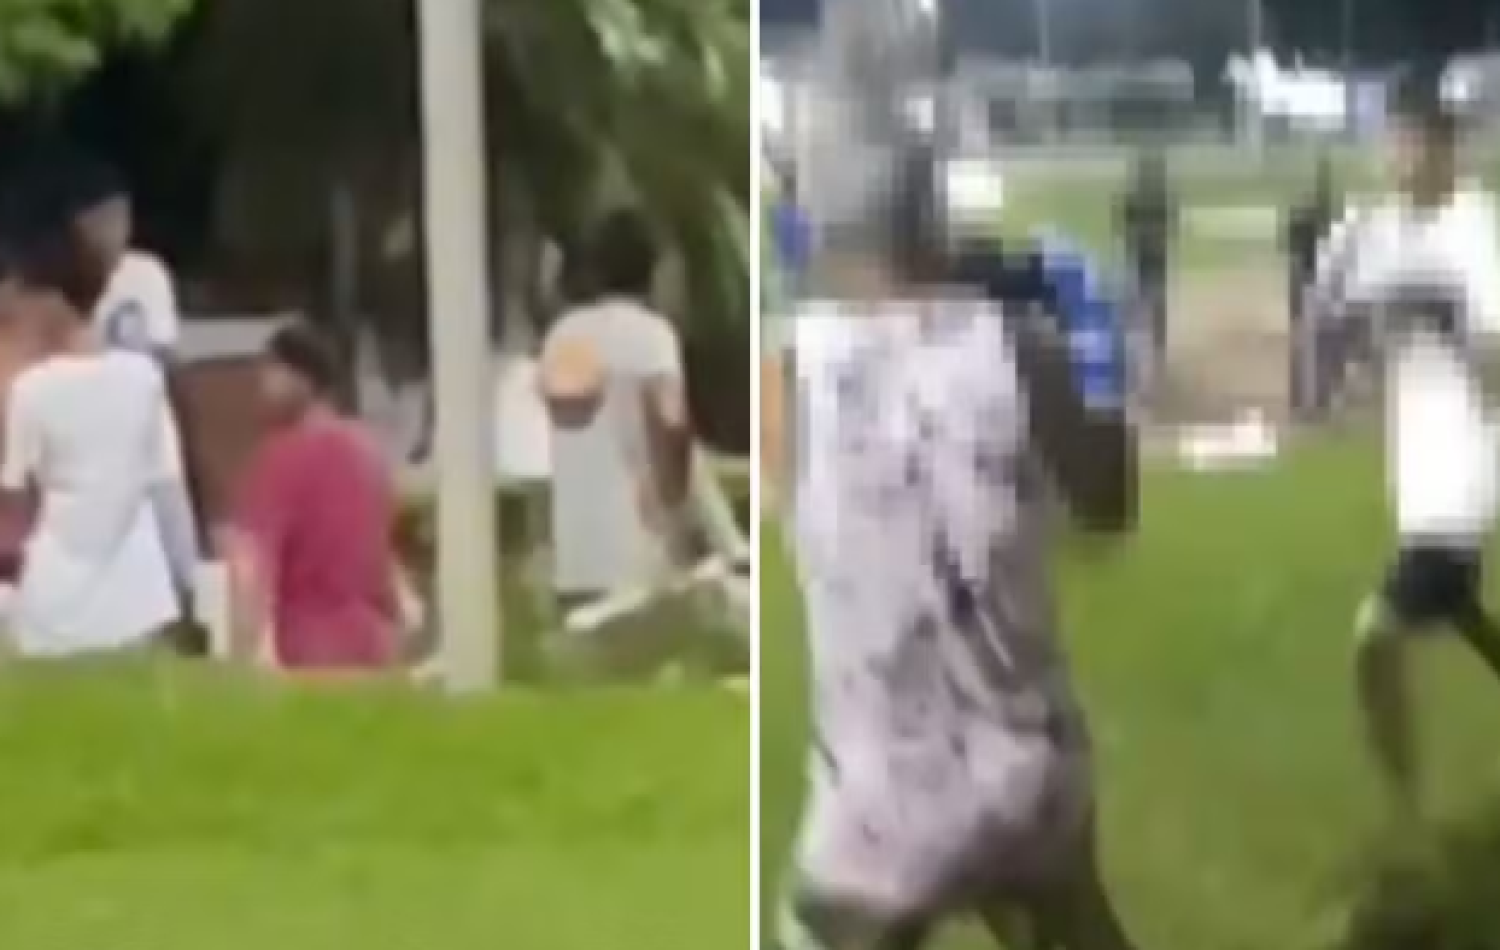 Lutas clandestinas em Goiás: Novo vídeo mostra quando garoto fica desacordado ao ser espancado